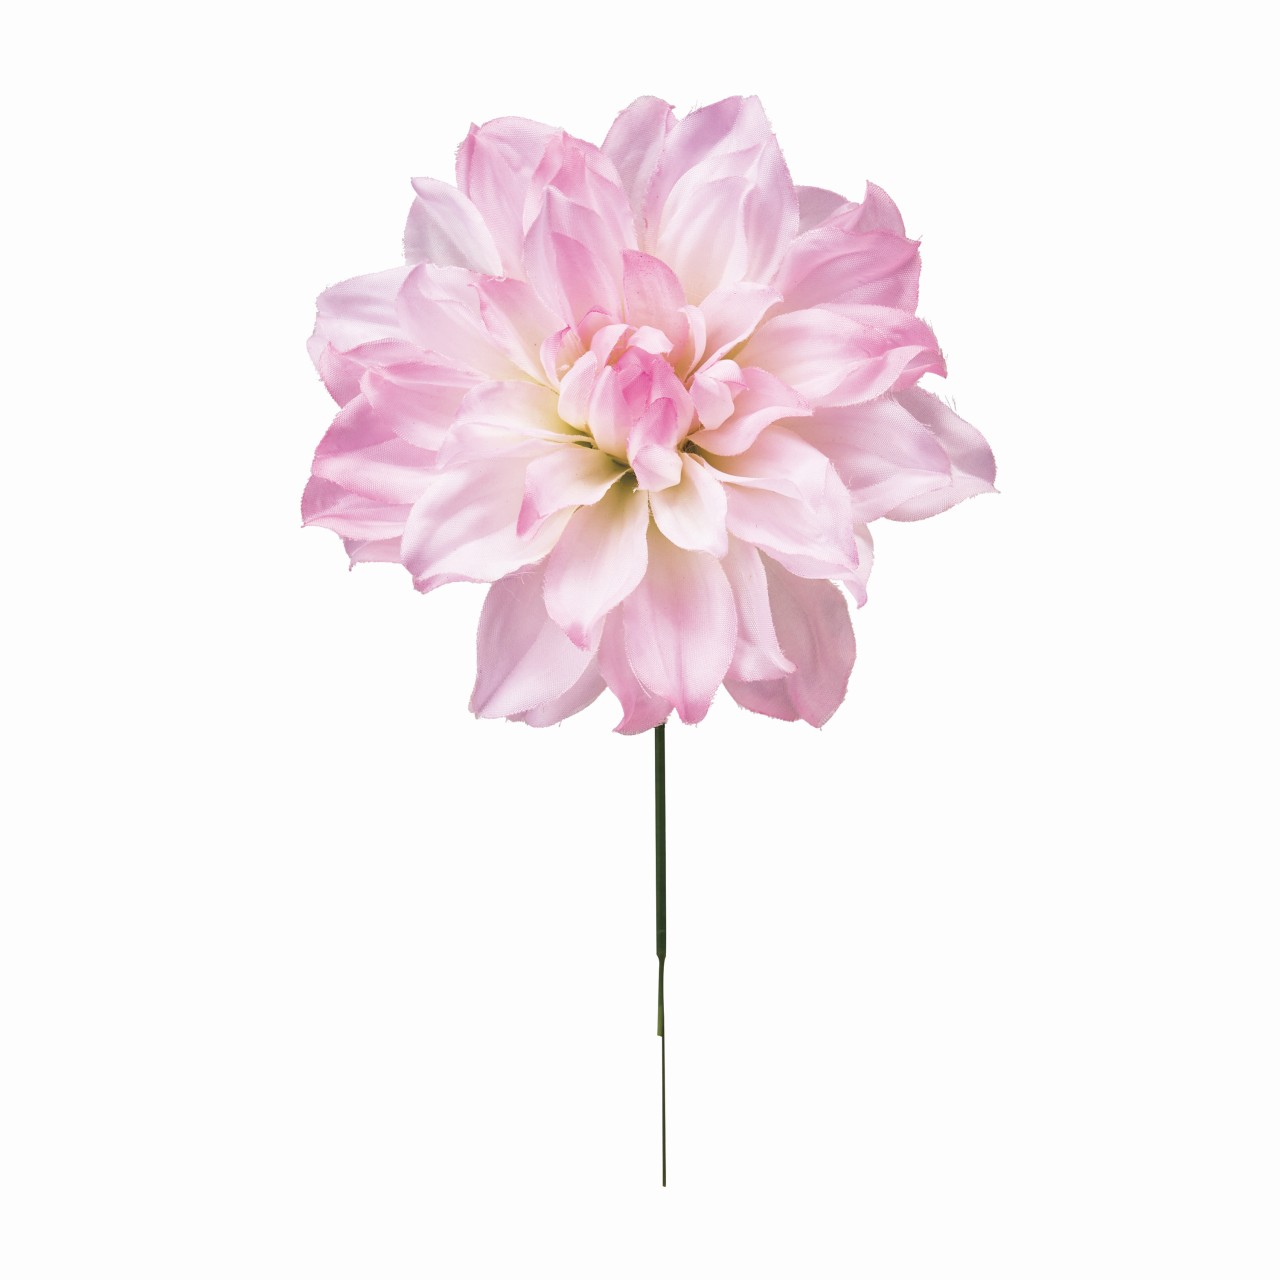 マイフラ 通販 Magiq カレンダリアピック ホワイト ピンク アーティフィシャルフラワー 造花 Fm 048 ダリア ホワイト ピンク Magiq アーティフィシャルフラワー 造花 全国にmagiq 花器 花資材などをお届けします